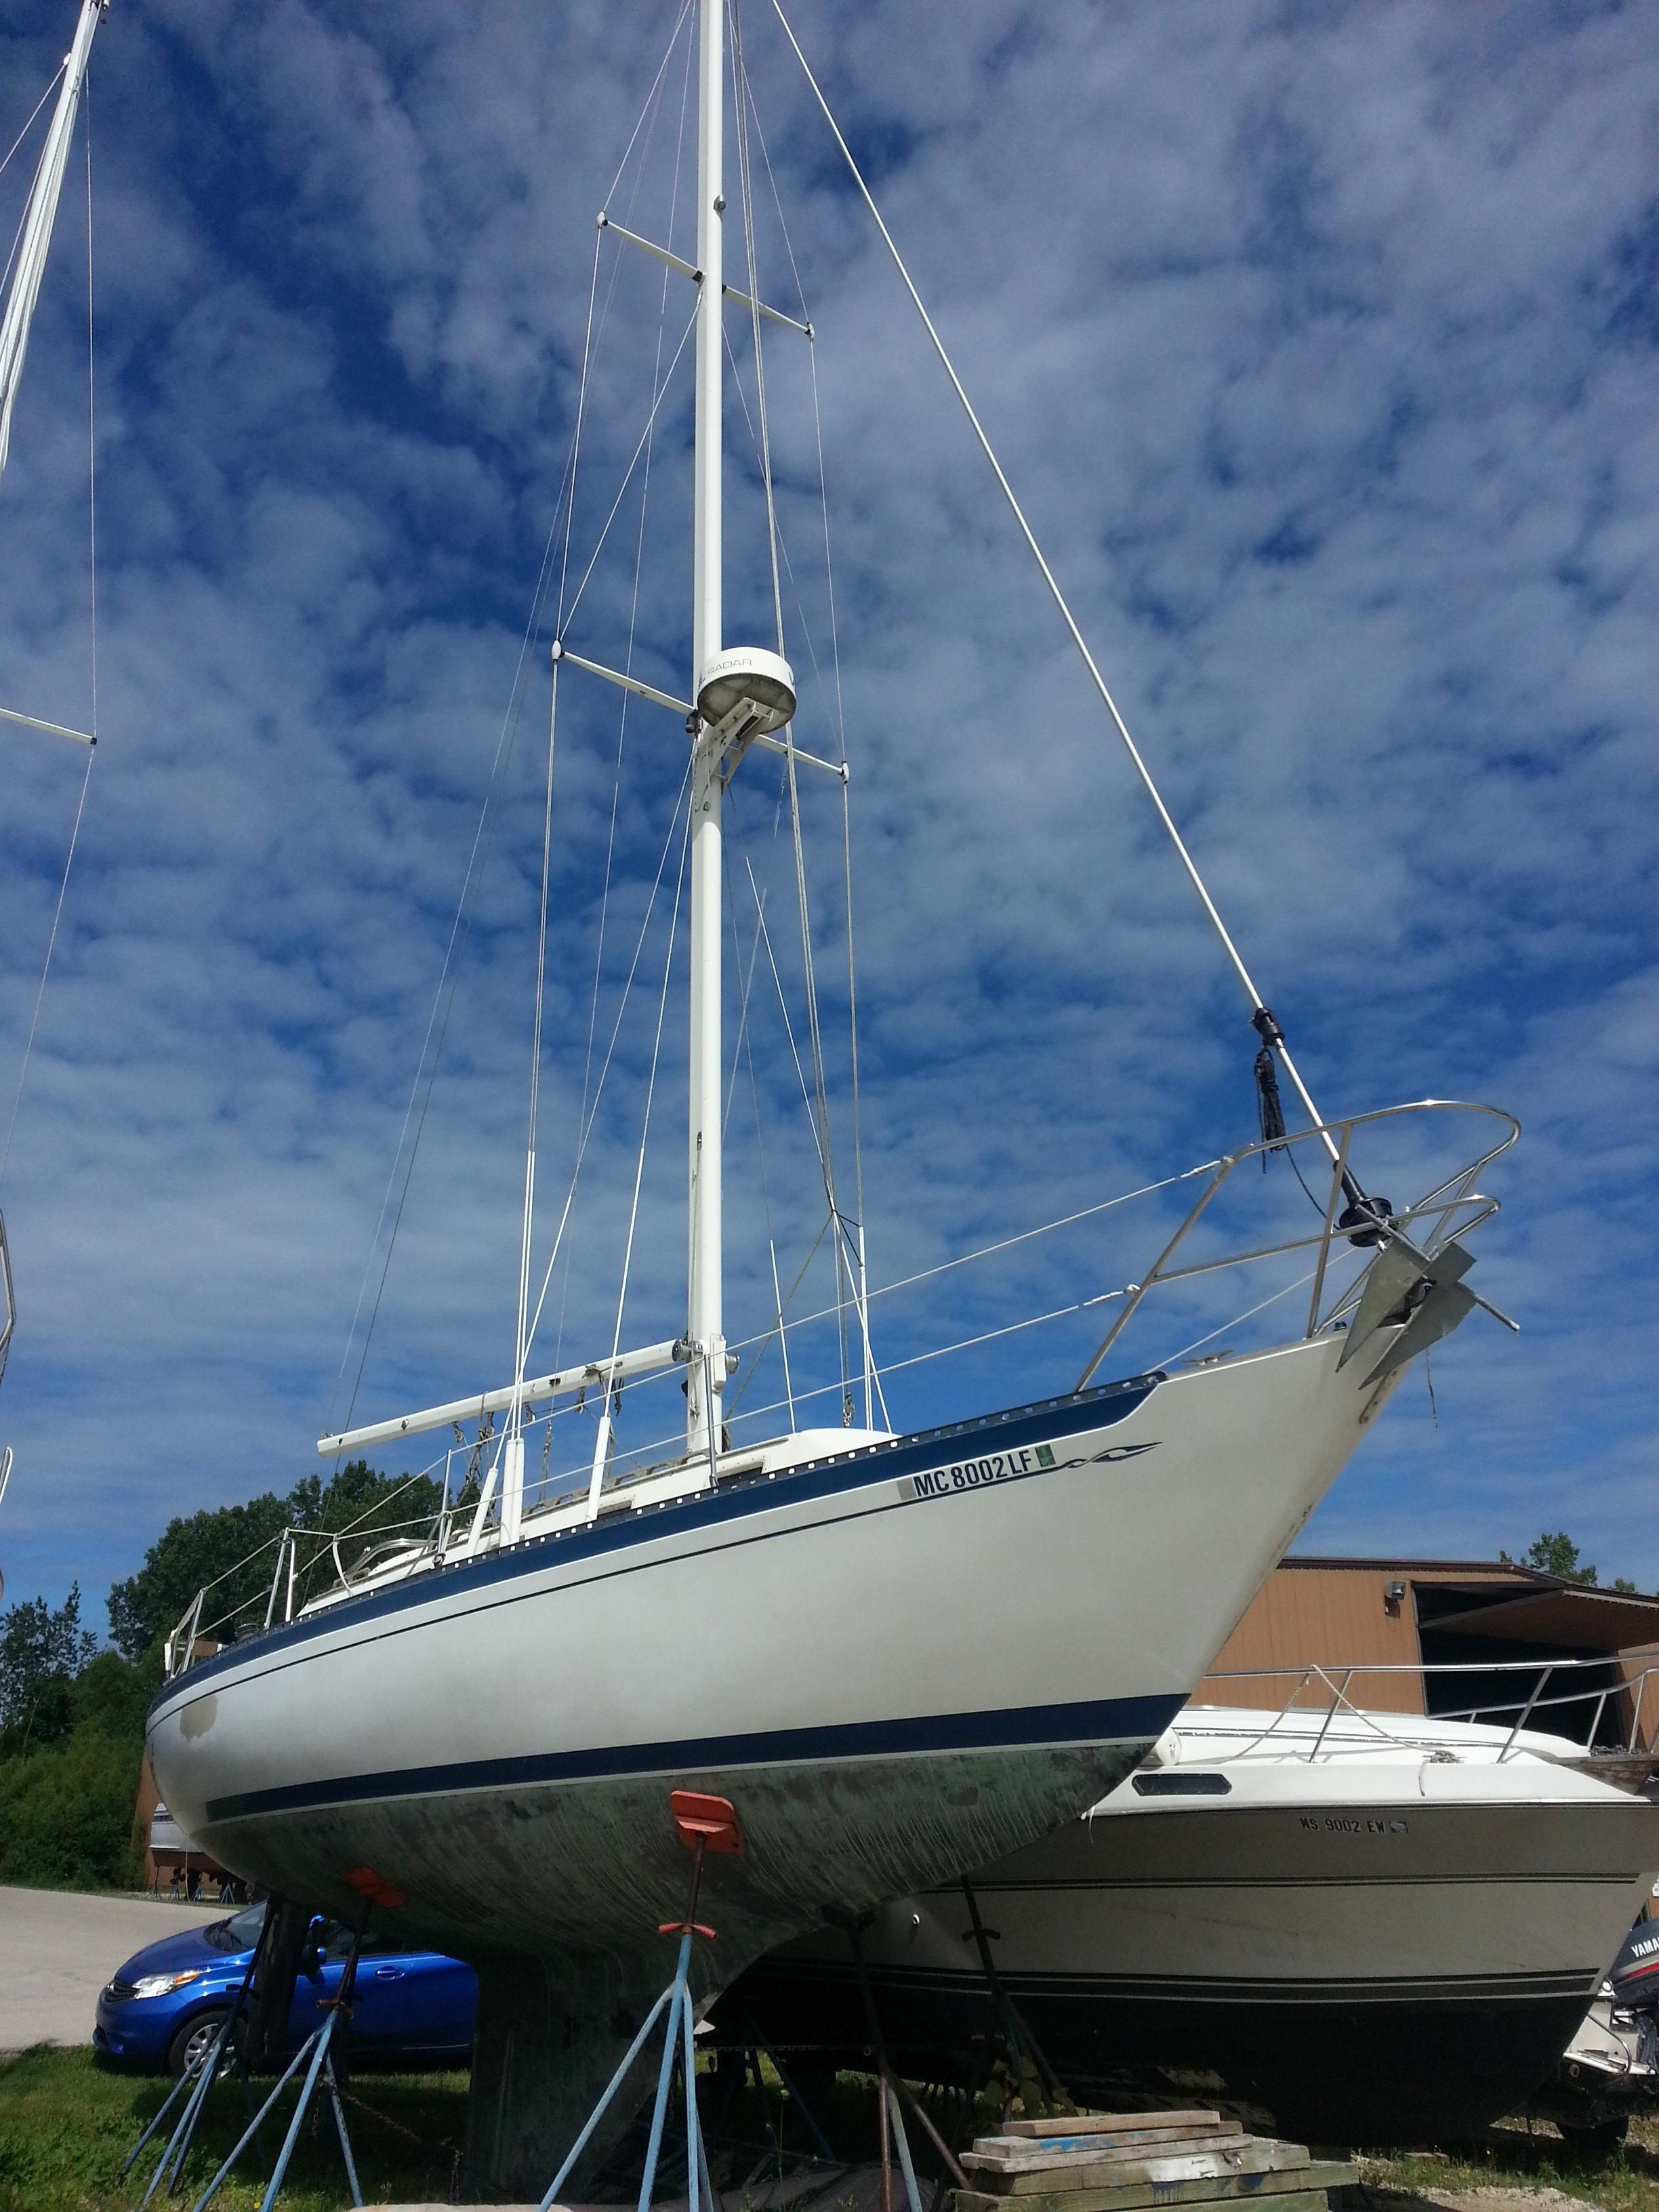 islander 36 sailboat for sale